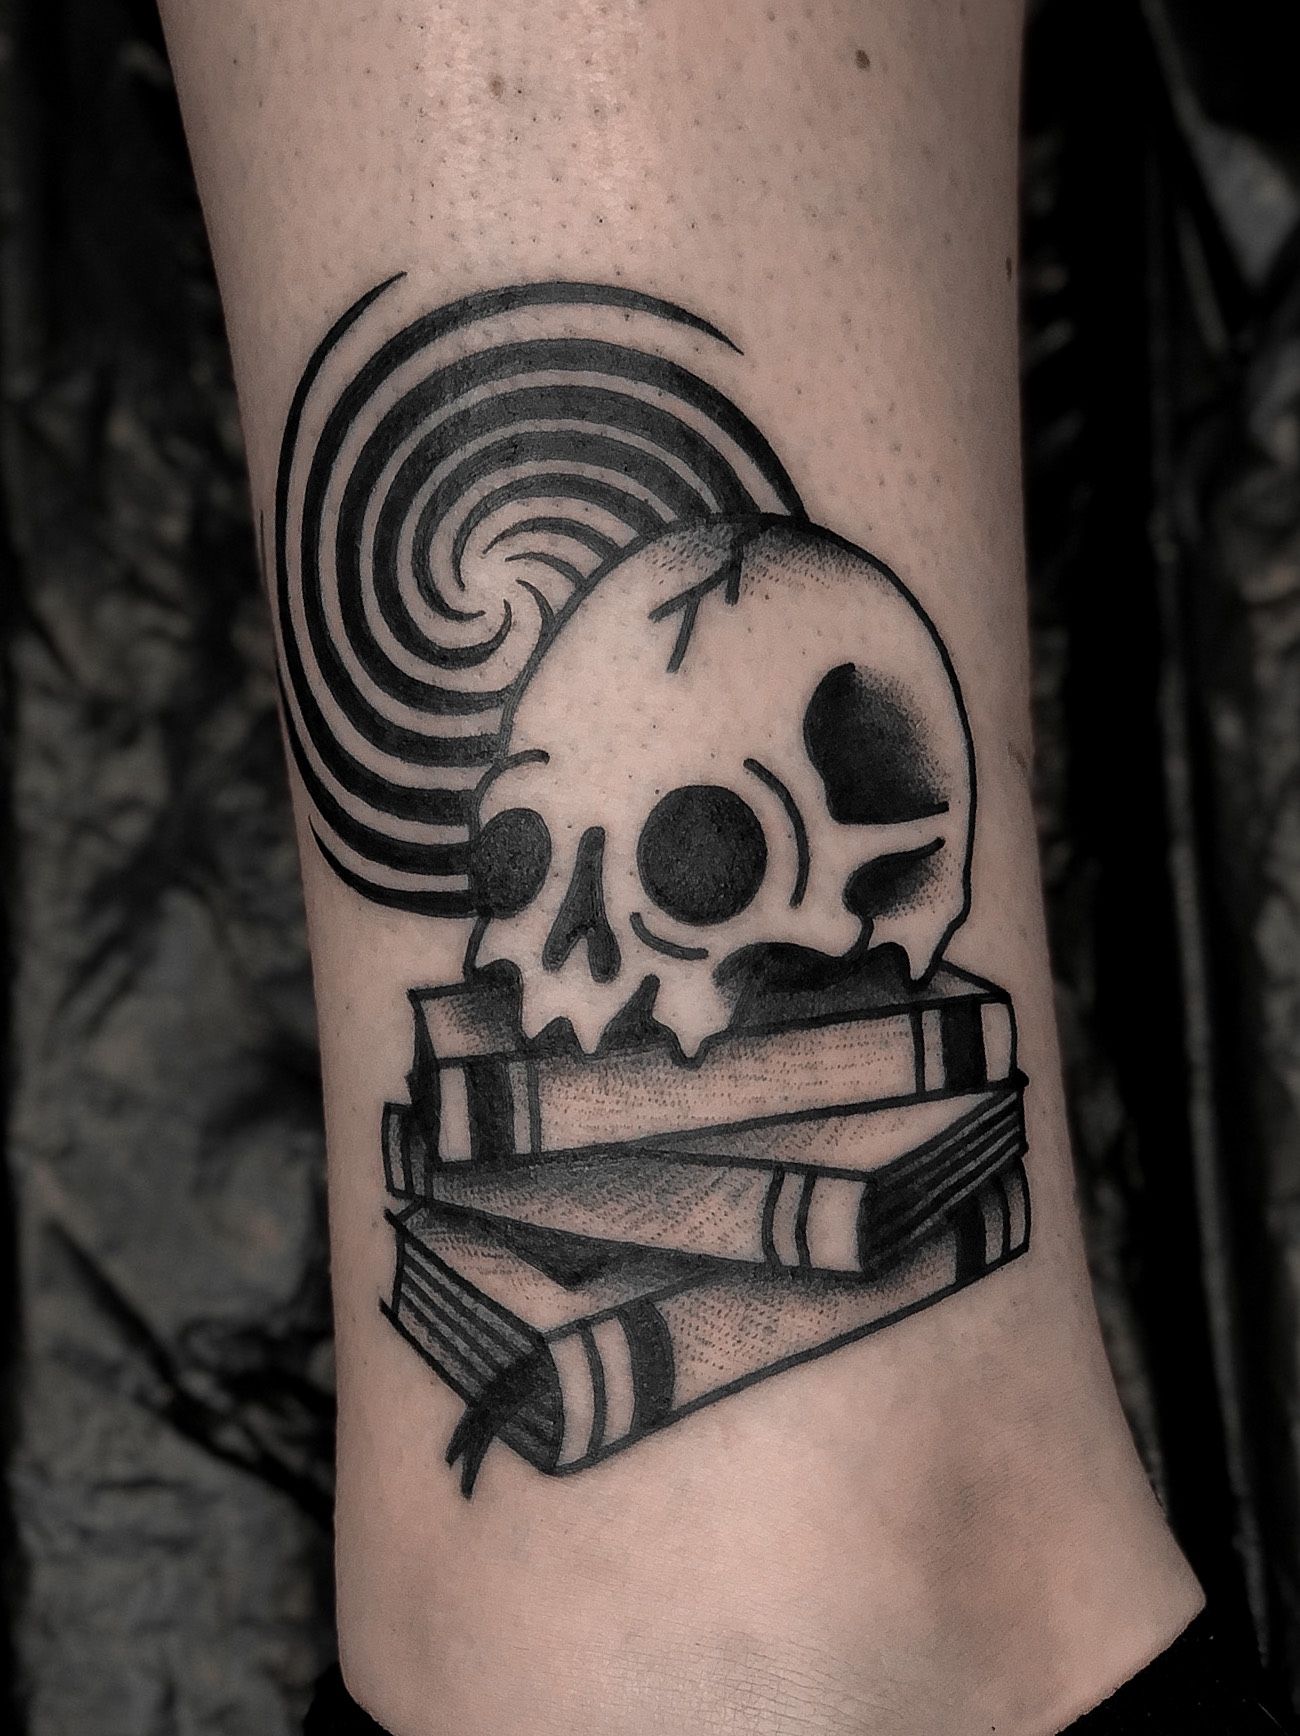 Spell book spellbook art dark black tattoo arm tome magic